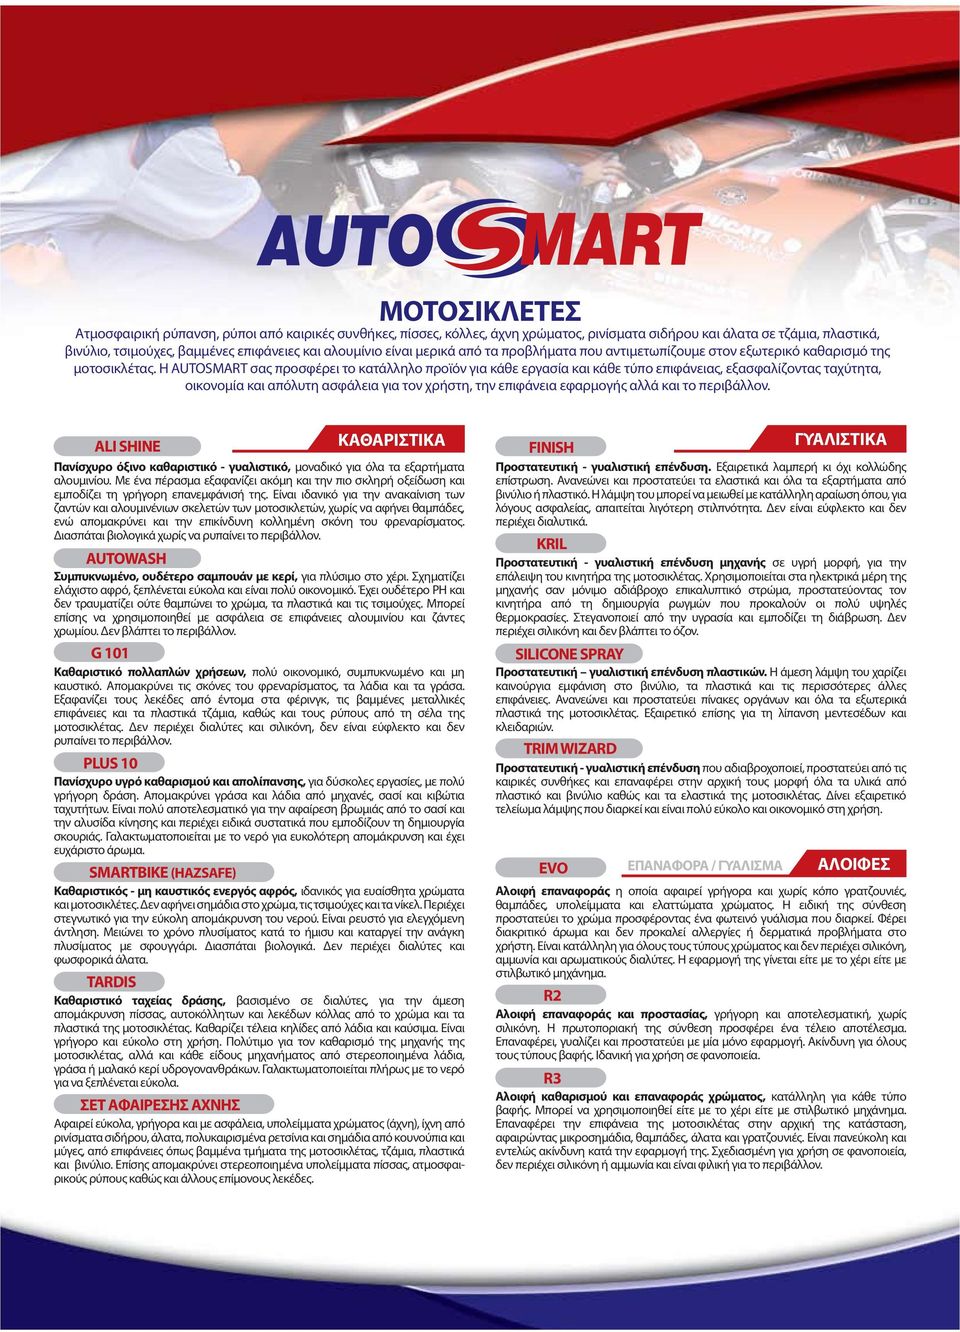 Η AUTOSMART σας προσφέρει το κατάλληλο προϊόν για κάθε εργασία και κάθε τύπο επιφάνειας, εξασφαλίζοντας ταχύτητα, οικονομία και απόλυτη ασφάλεια για τον χρήστη, την επιφάνεια εφαρμογής αλλά και το